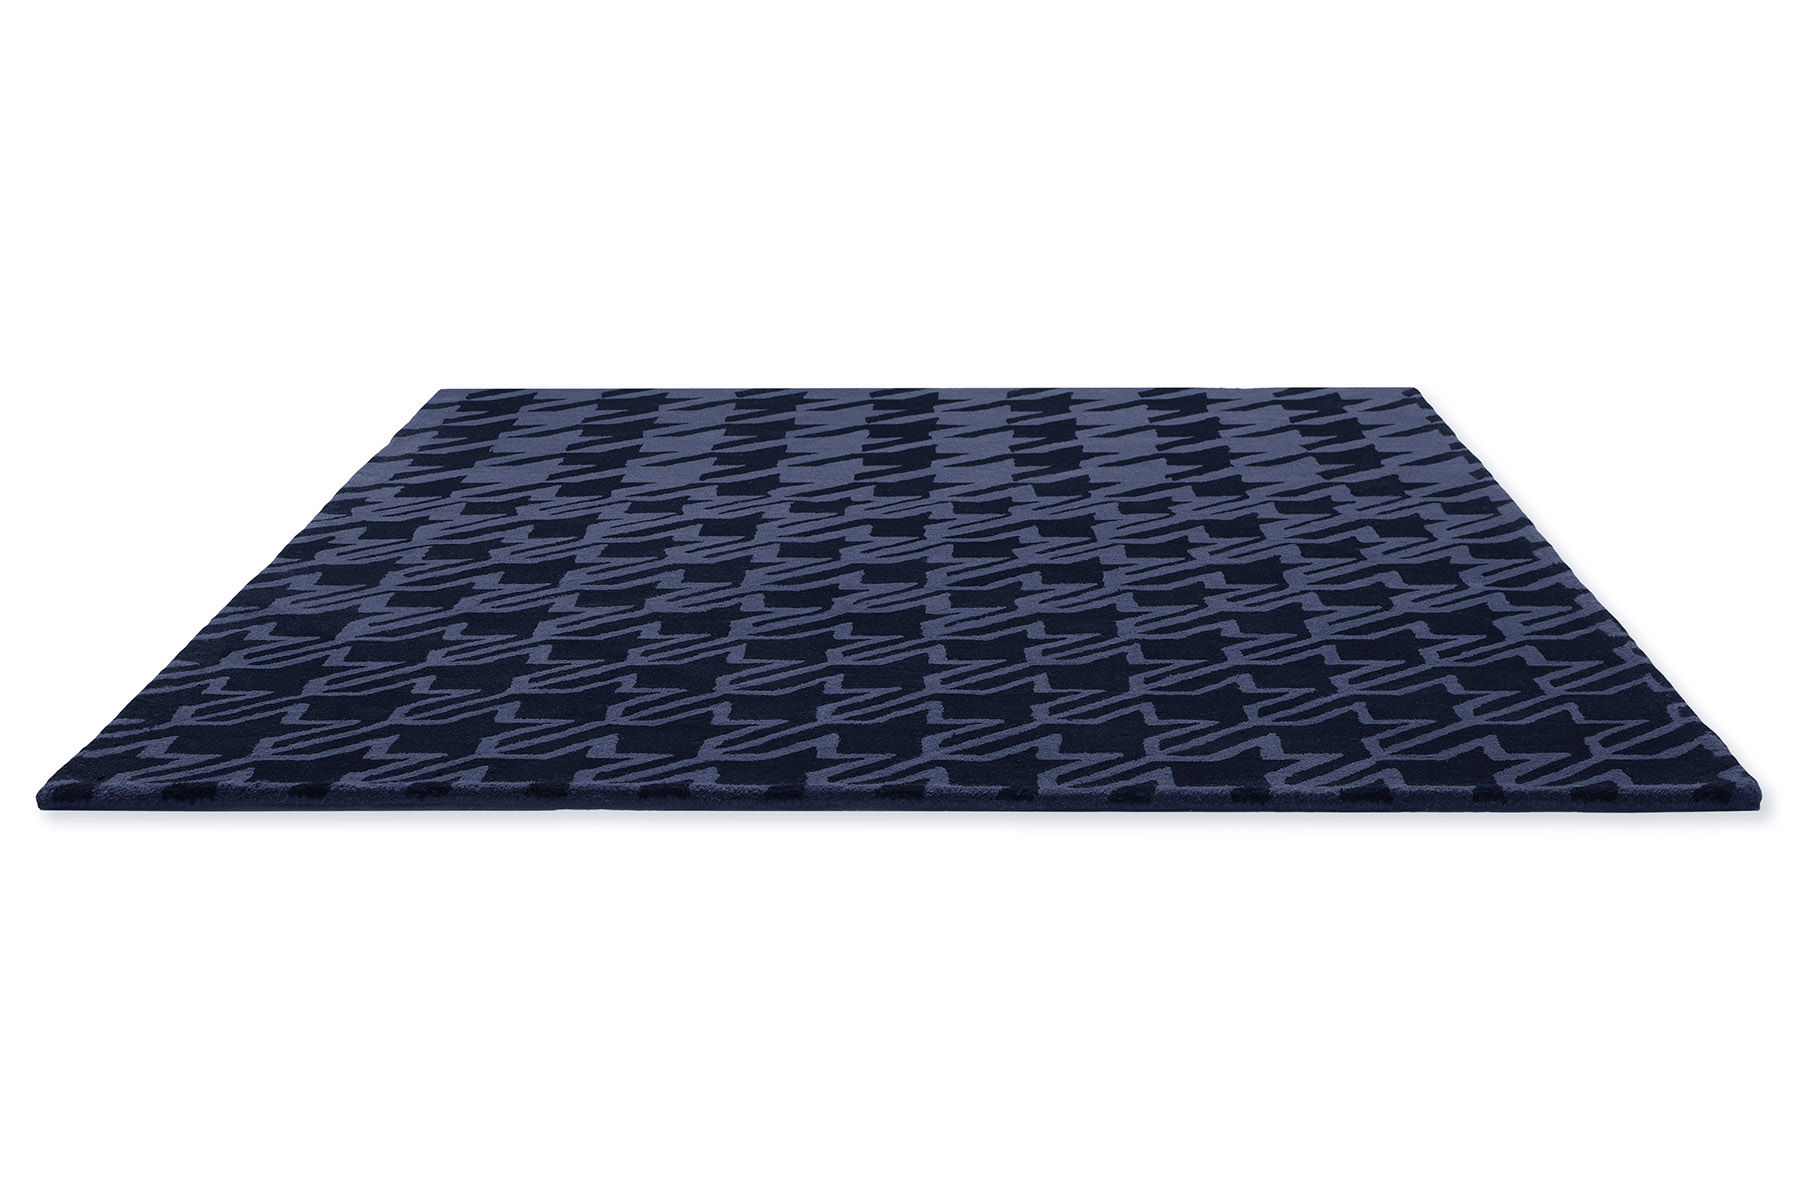 Houndstooth Dark Blue Designer Rug ☞ Size: 6' 7" x 9' 2" (200 x 280 cm)